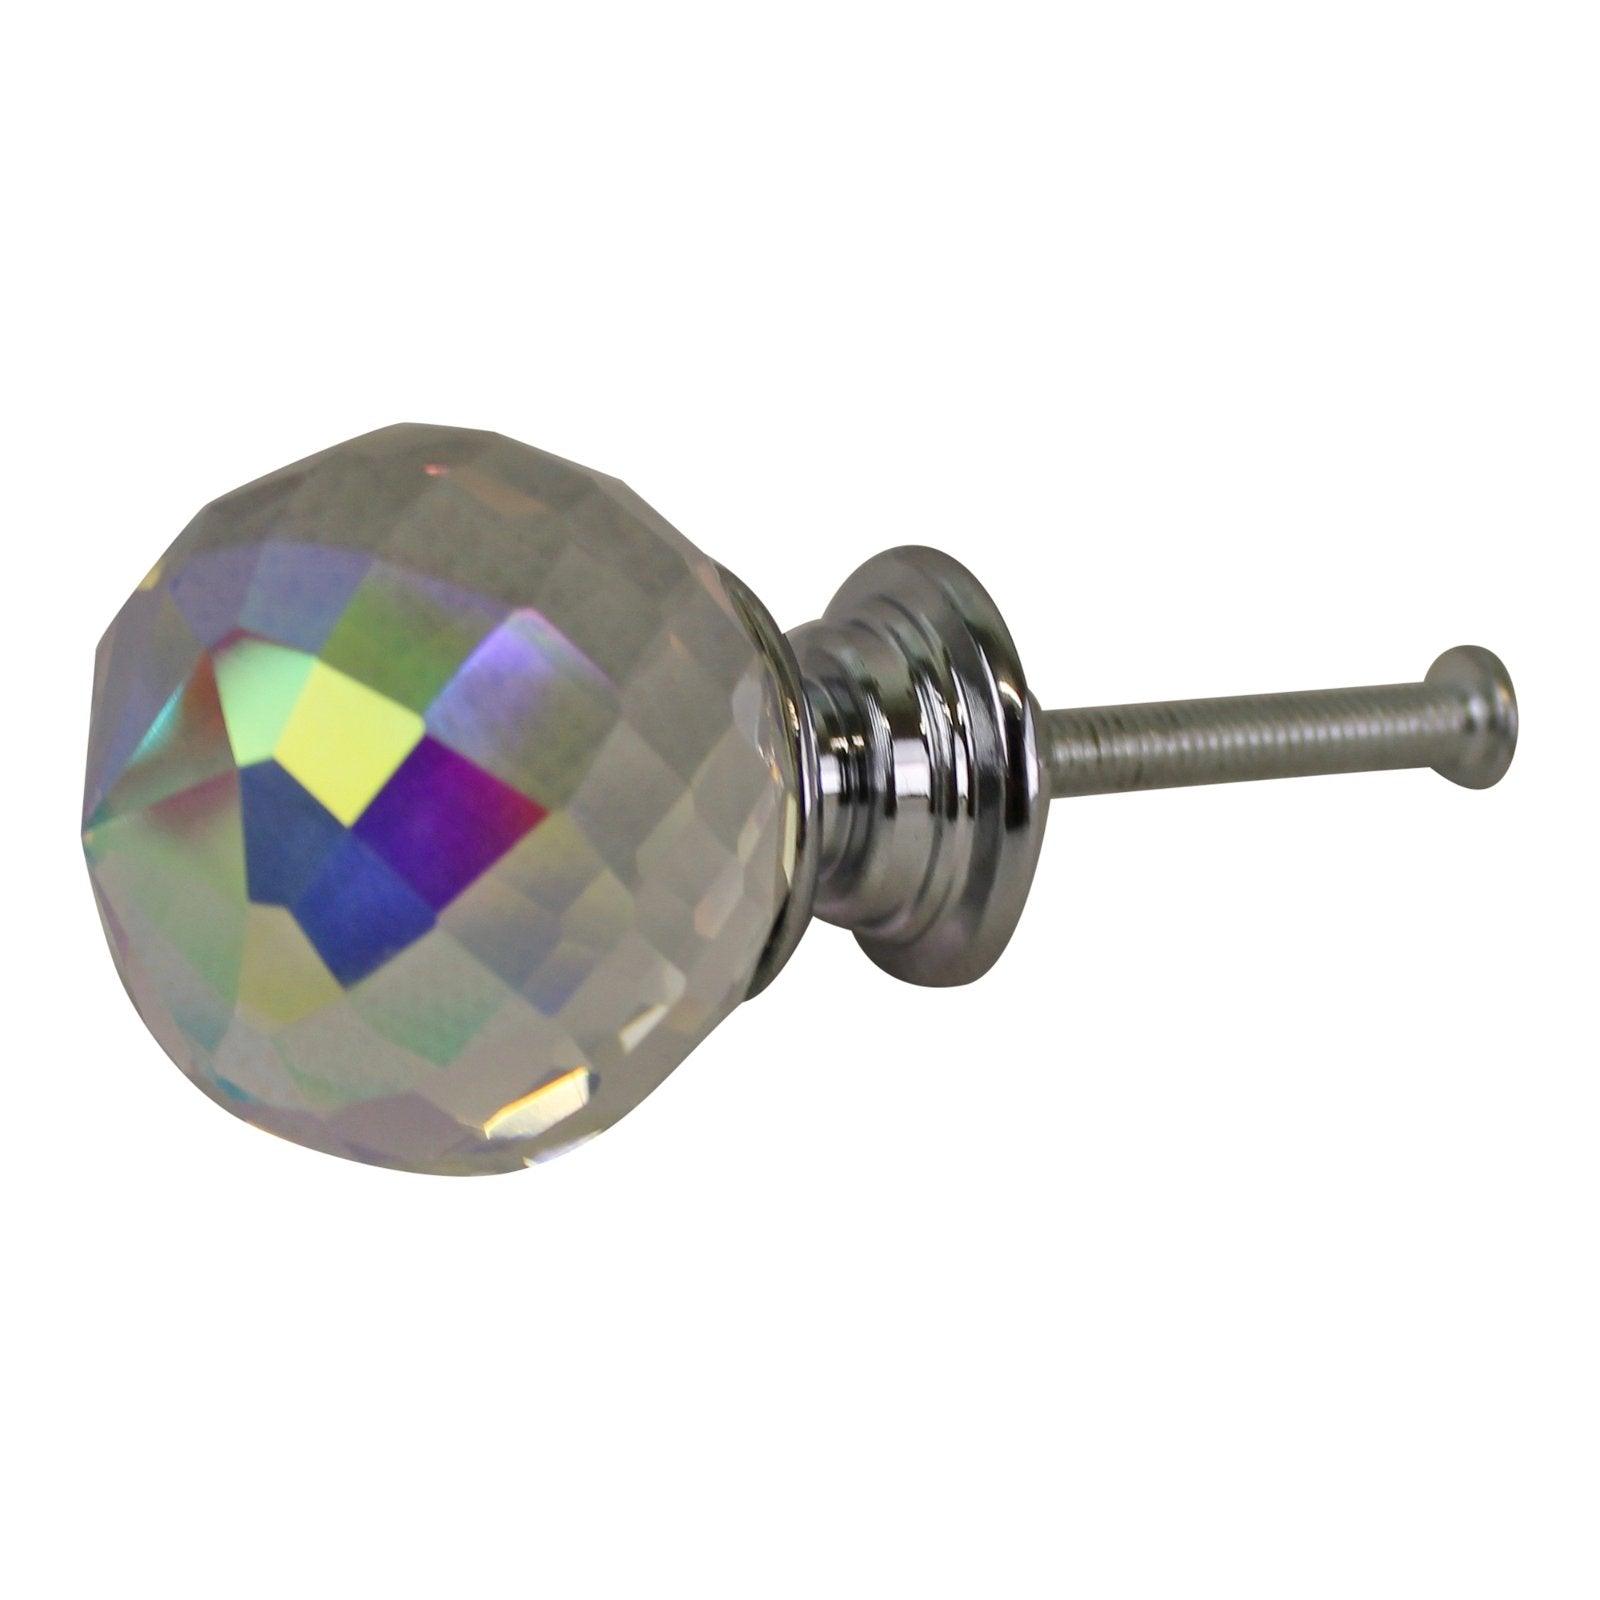 3cm Crystal Effect Doorknobs, spherical, set of 4 - £20.99 - Doorknobs 